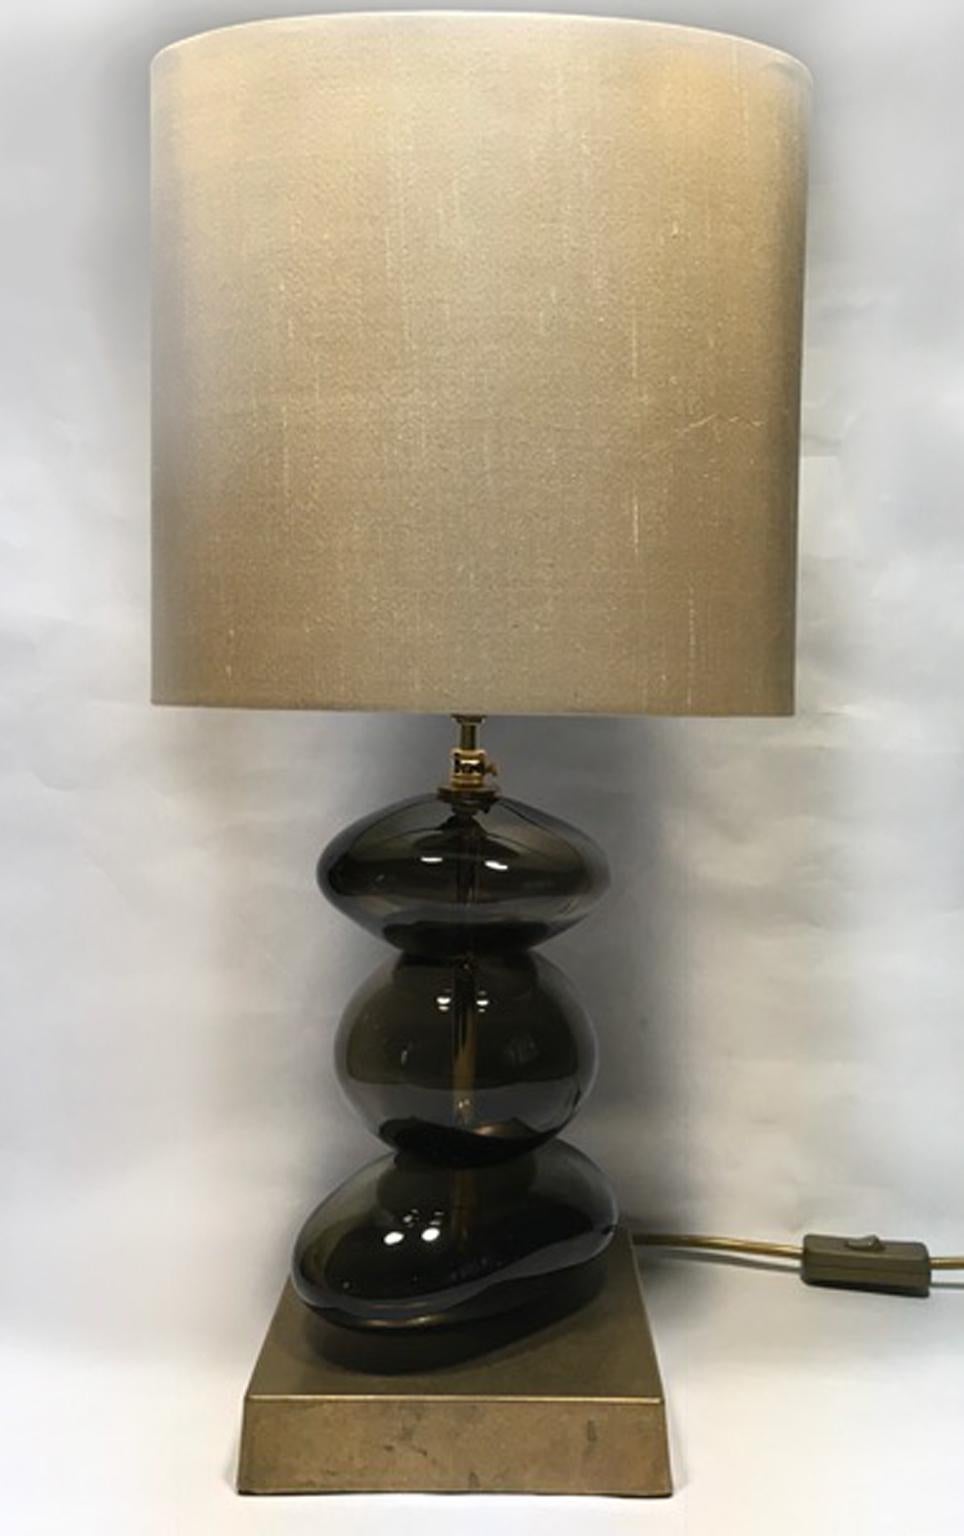 Voici une lampe de table en verre soufflé de couleur bronze avec un abat-jour en pure soie fait à la main, de production contemporaine.
C'est un bel objet qui attire le regard, une œuvre d'art par sa présence élégante et par la forme organique du